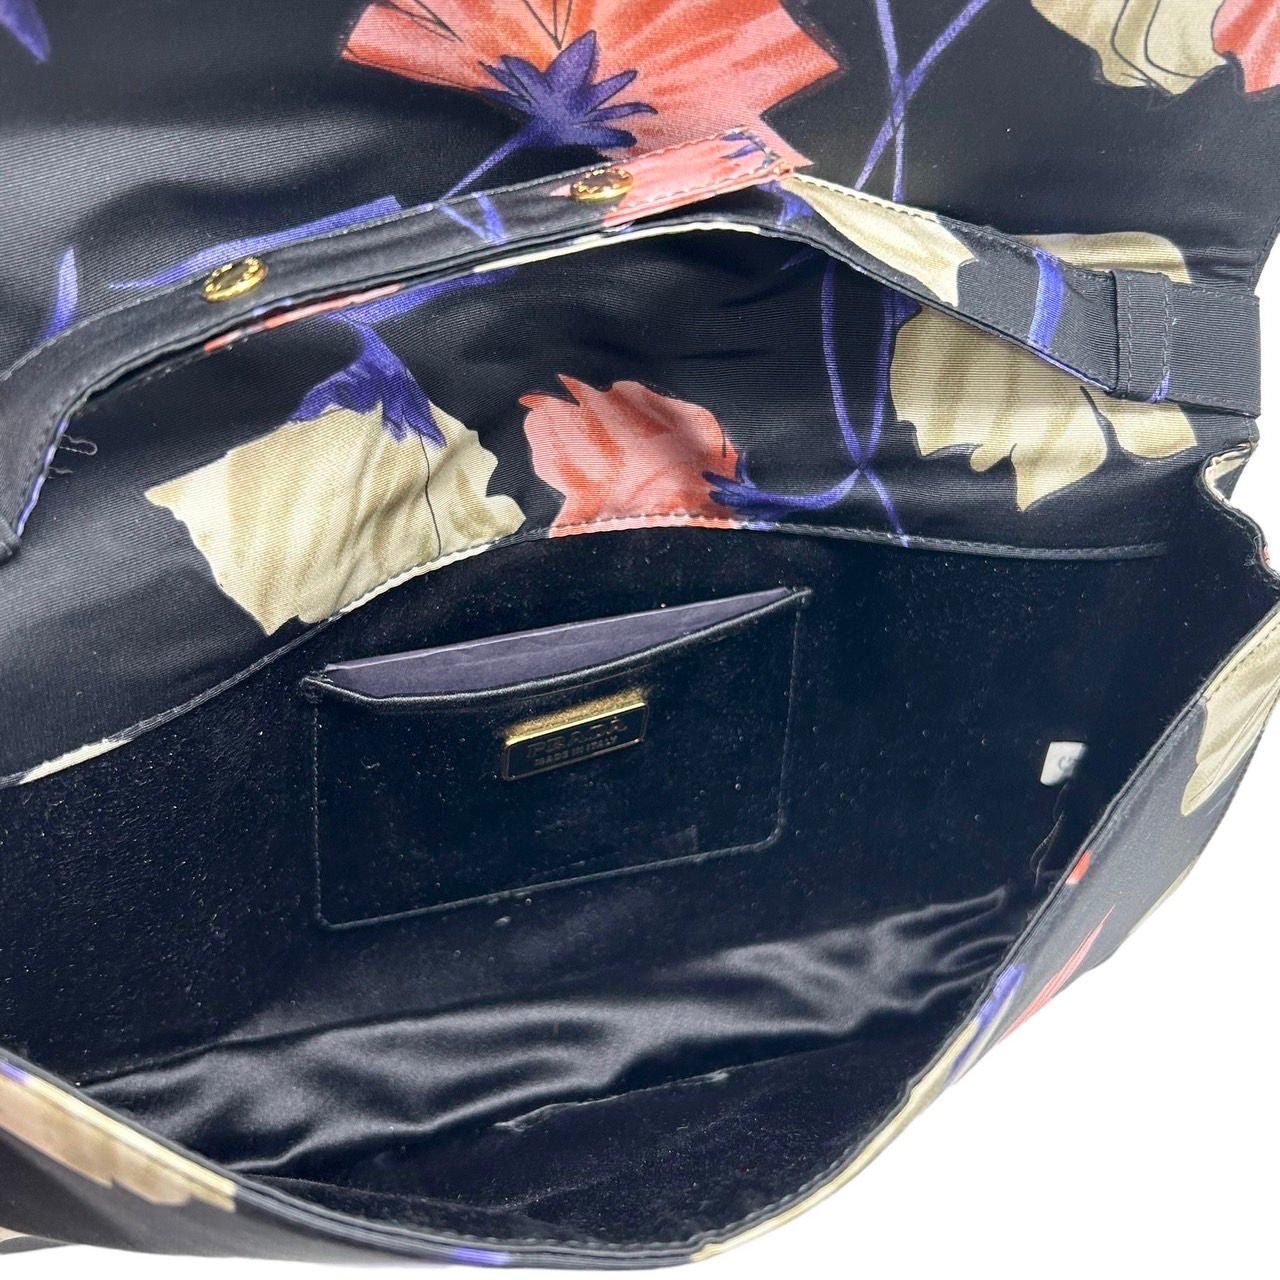 Prada Black Floral Satin Mini Top Handle Bag